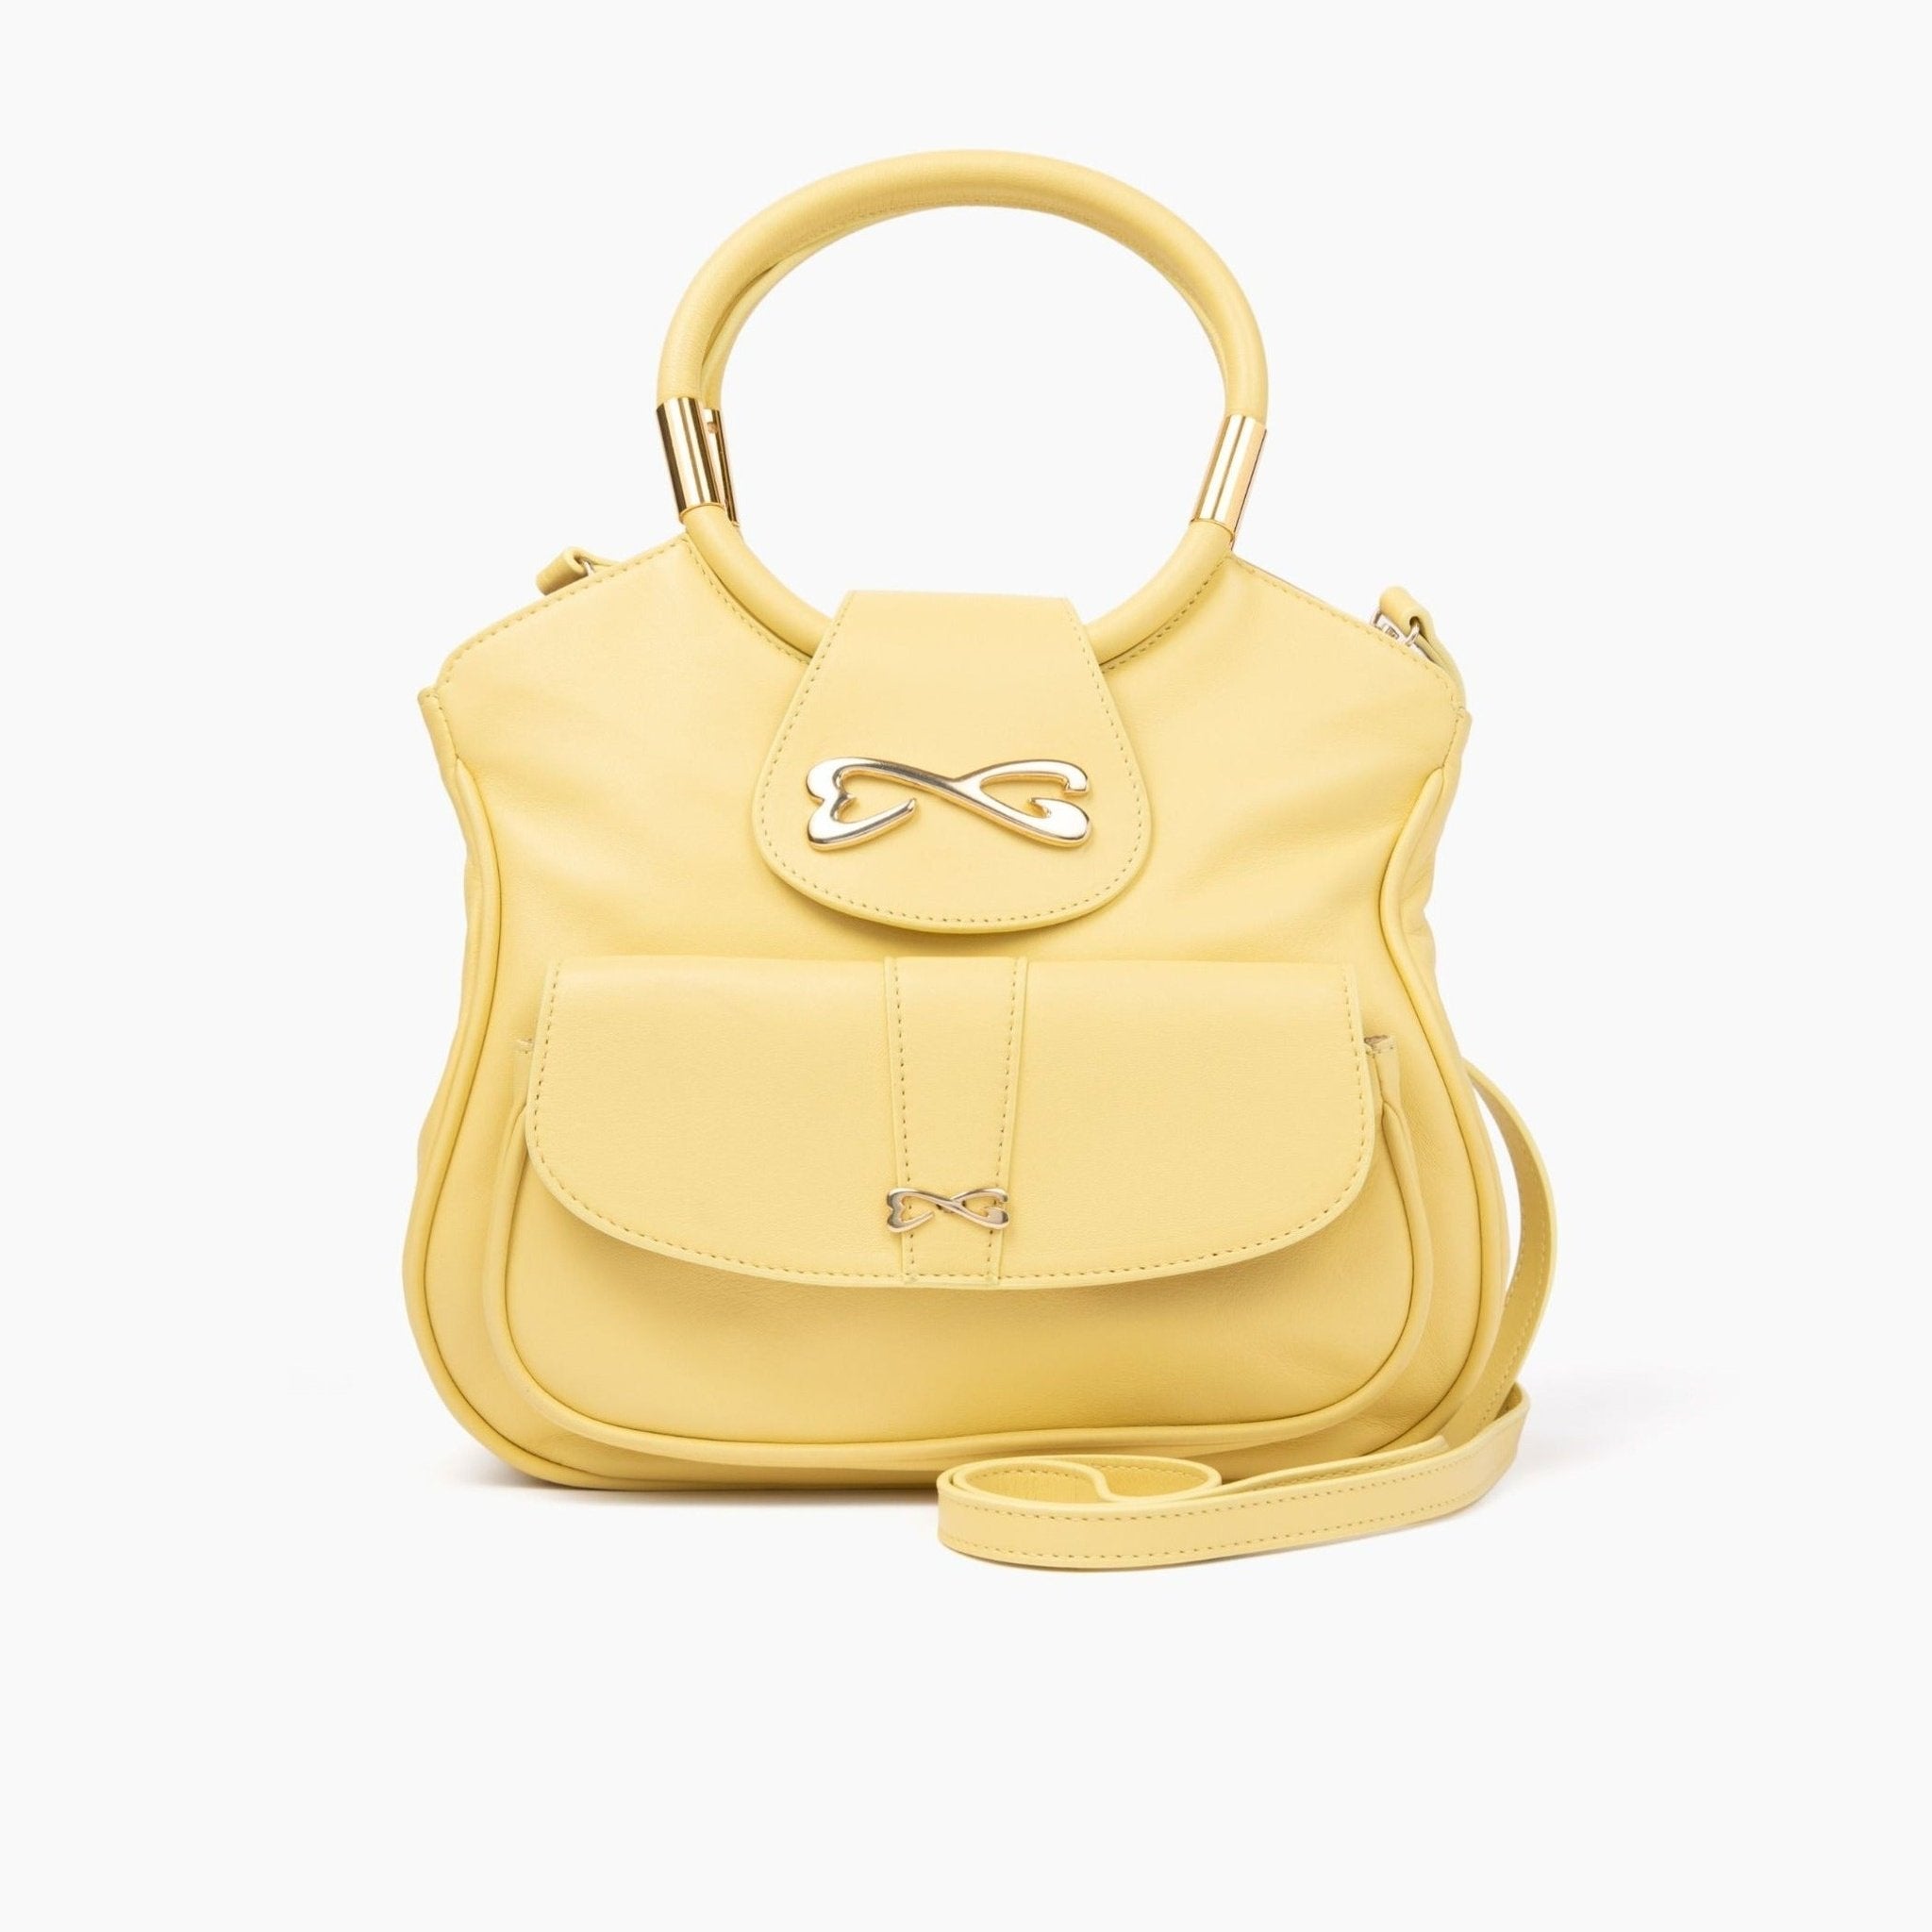 unique yellow medium leather handbag